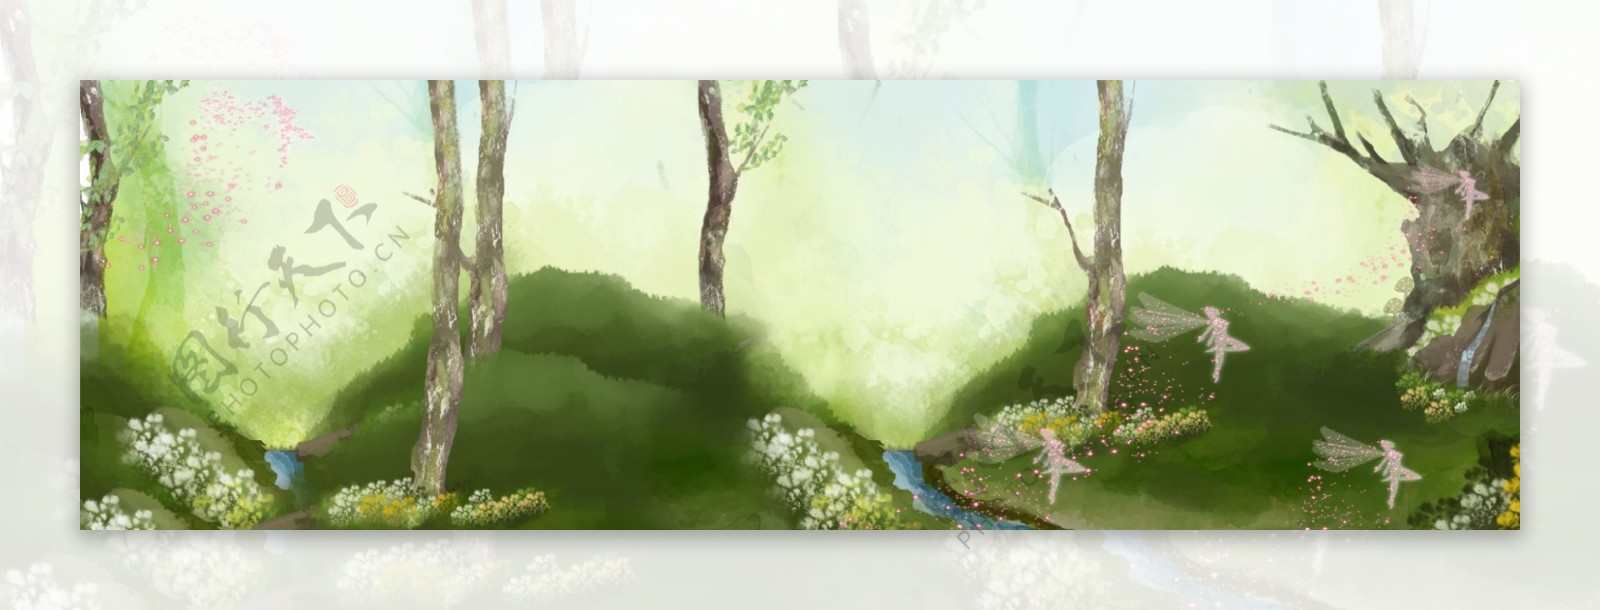 神秘森林系banner背景